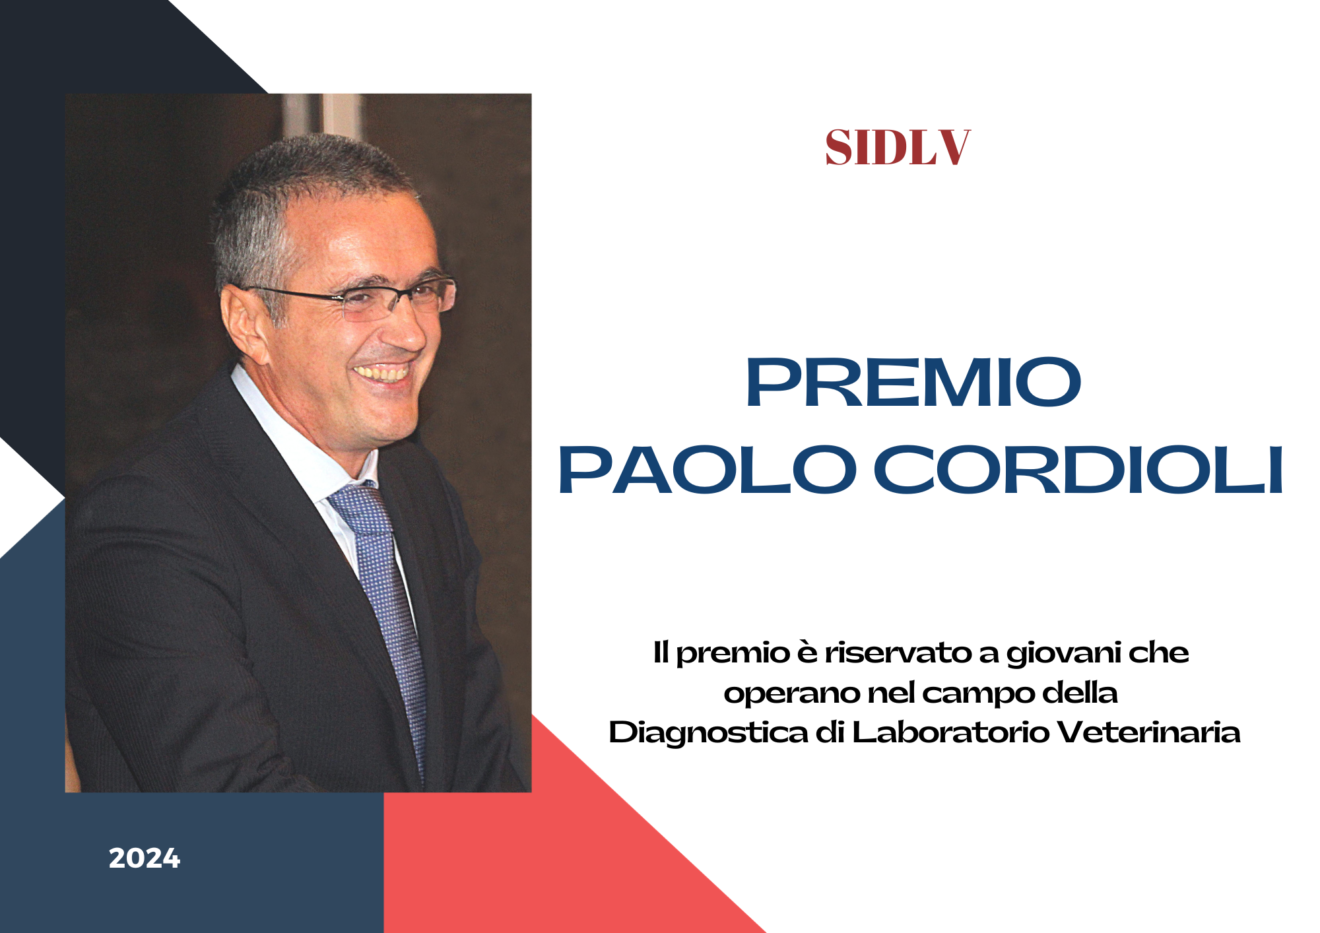 Premio SIDILV, in memoria di Paolo Cordioli